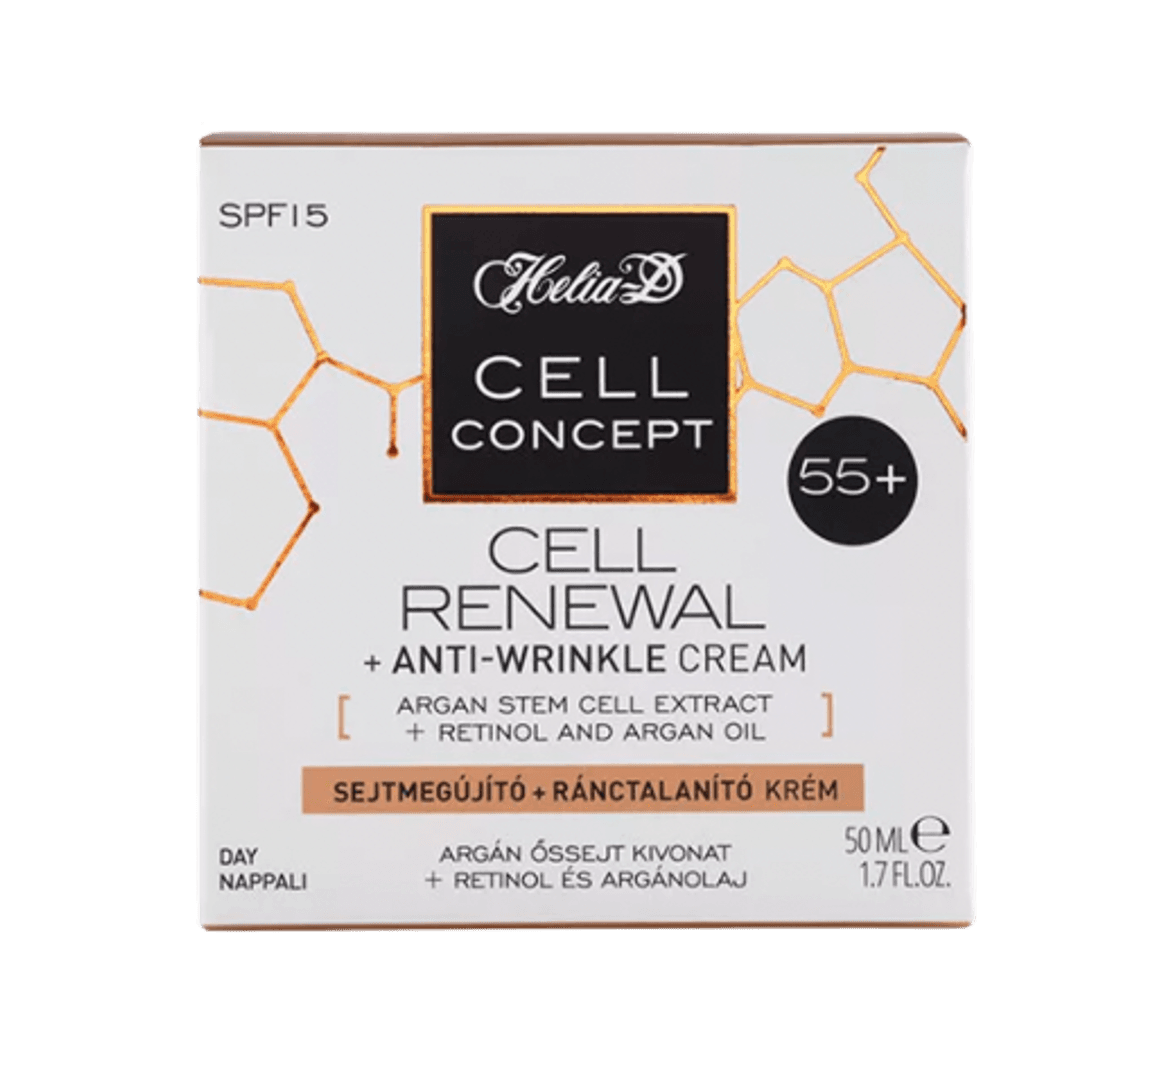 Helia-D Cell Concept sejtmegújító + ránctalanító nappali arckrém 55+